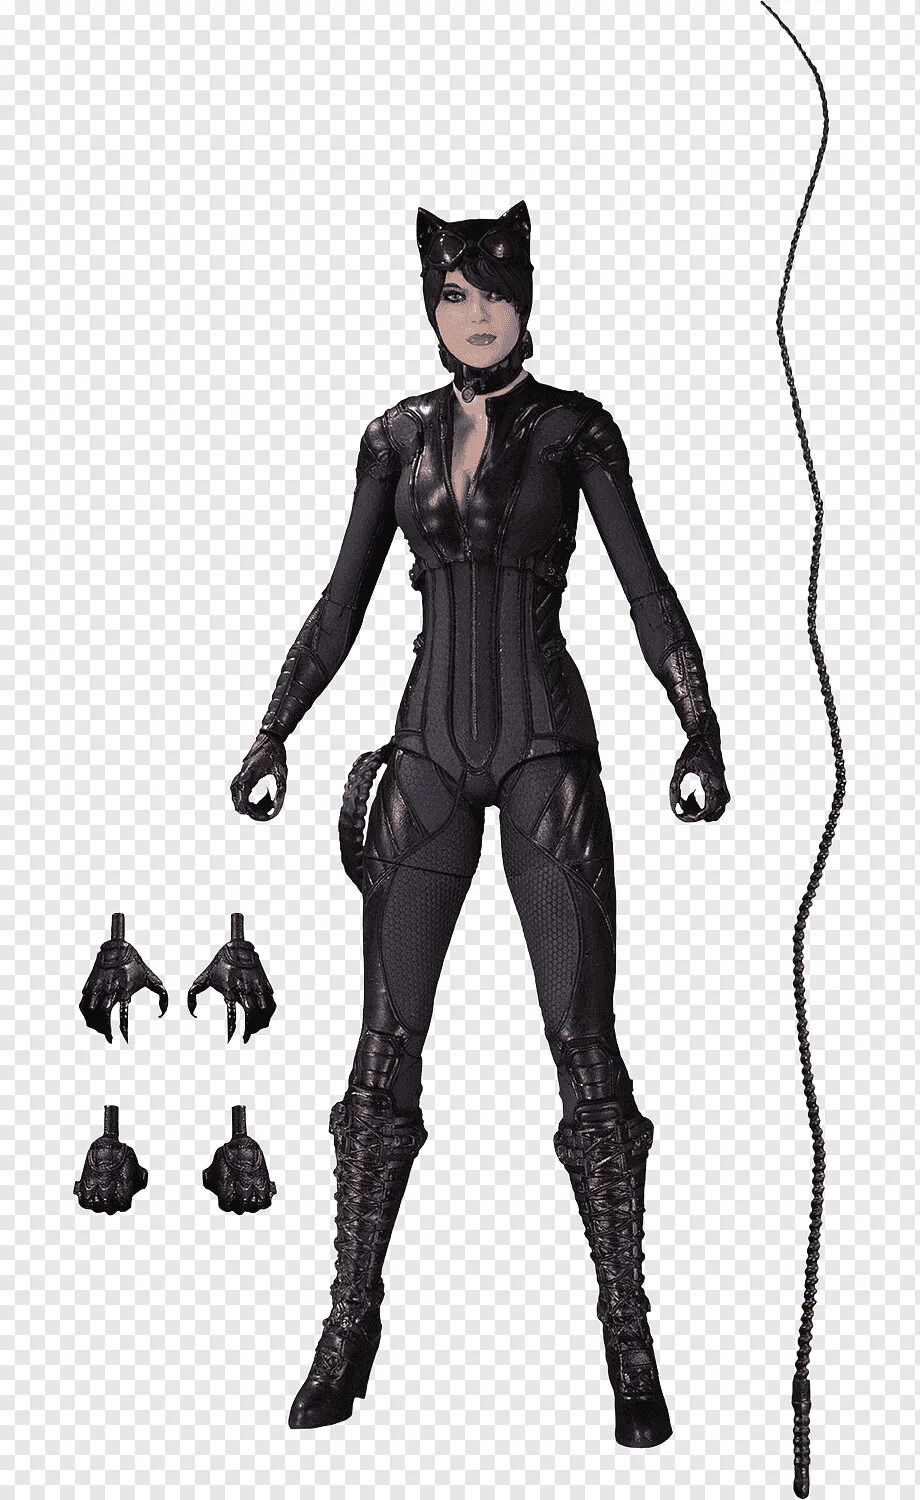 Фигурка Catwoman Arkham Knight. Бэтмен Аркхем женщина кошка. Batman Arkham Knight женщина кошка. Batman Arkham City женщина кошка.